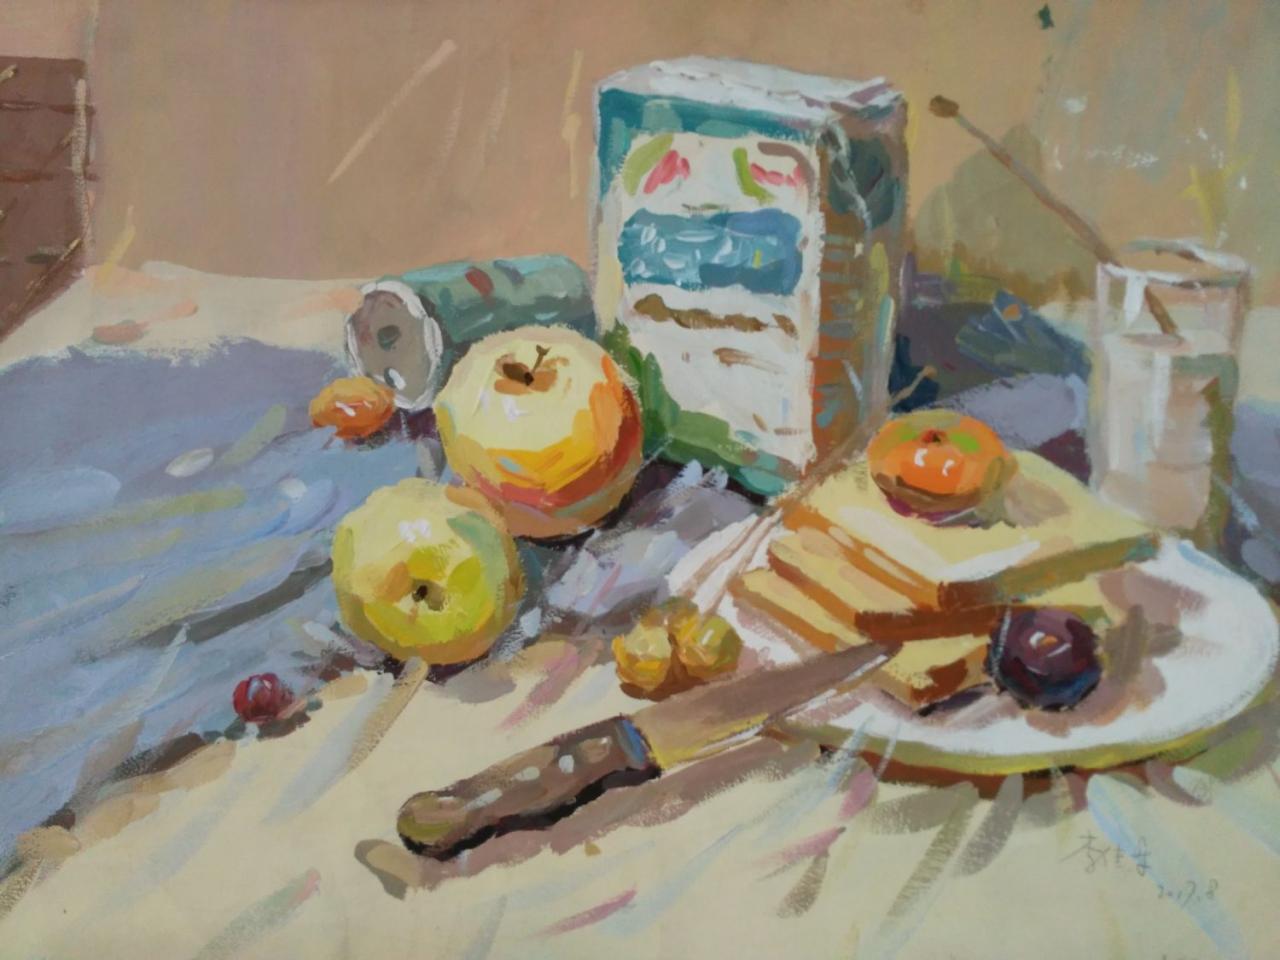 水粉静物 酸奶、苹果、面包、葡萄、水果刀、水杯、盘子等 李佳乐画